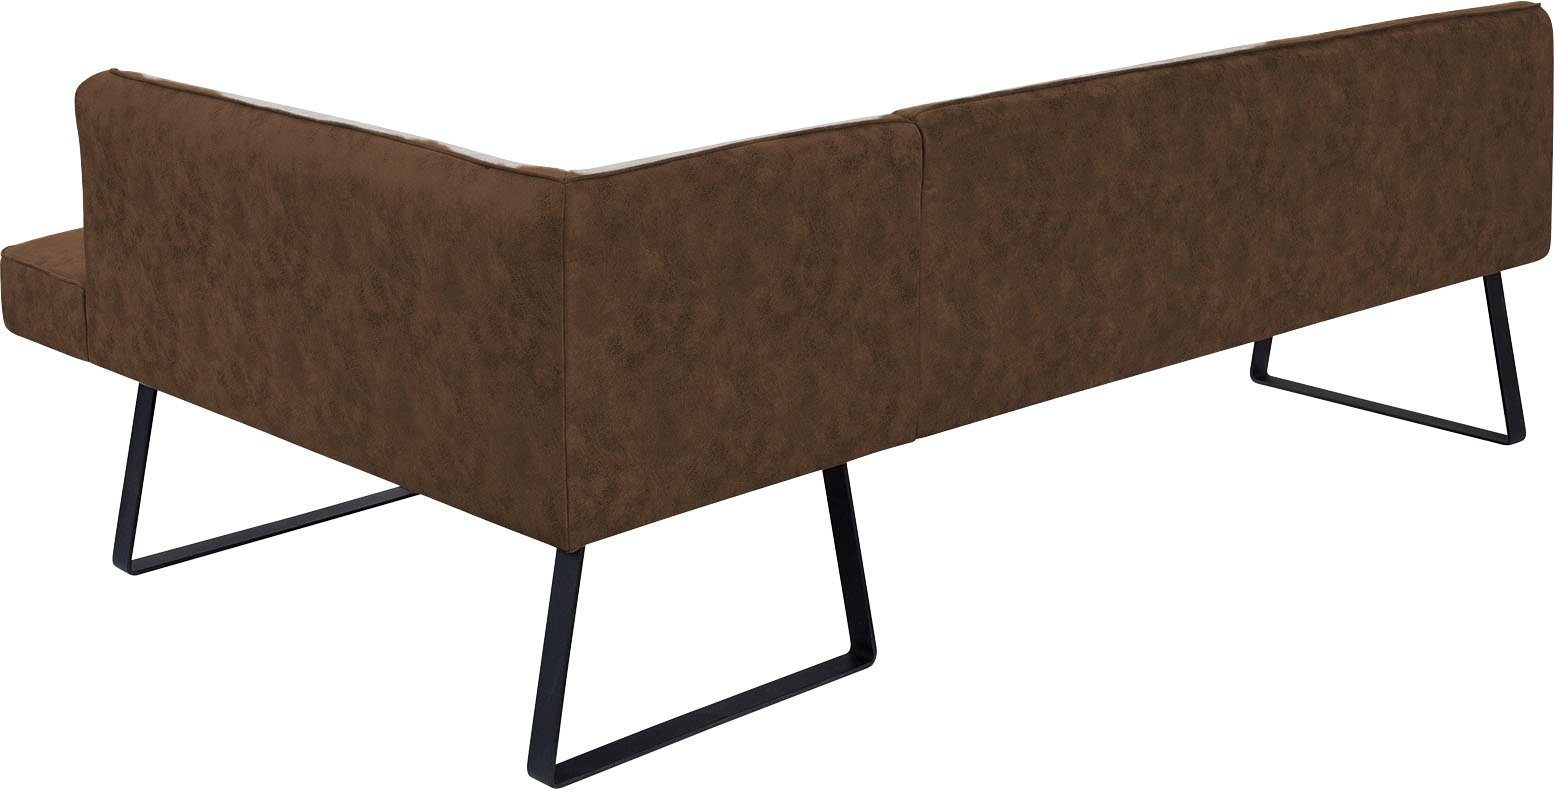 exxpo - sofa fashion Eckbank Qualitäten in verschiedenen Metallfüßen, mit Keder Bezug Americano, und